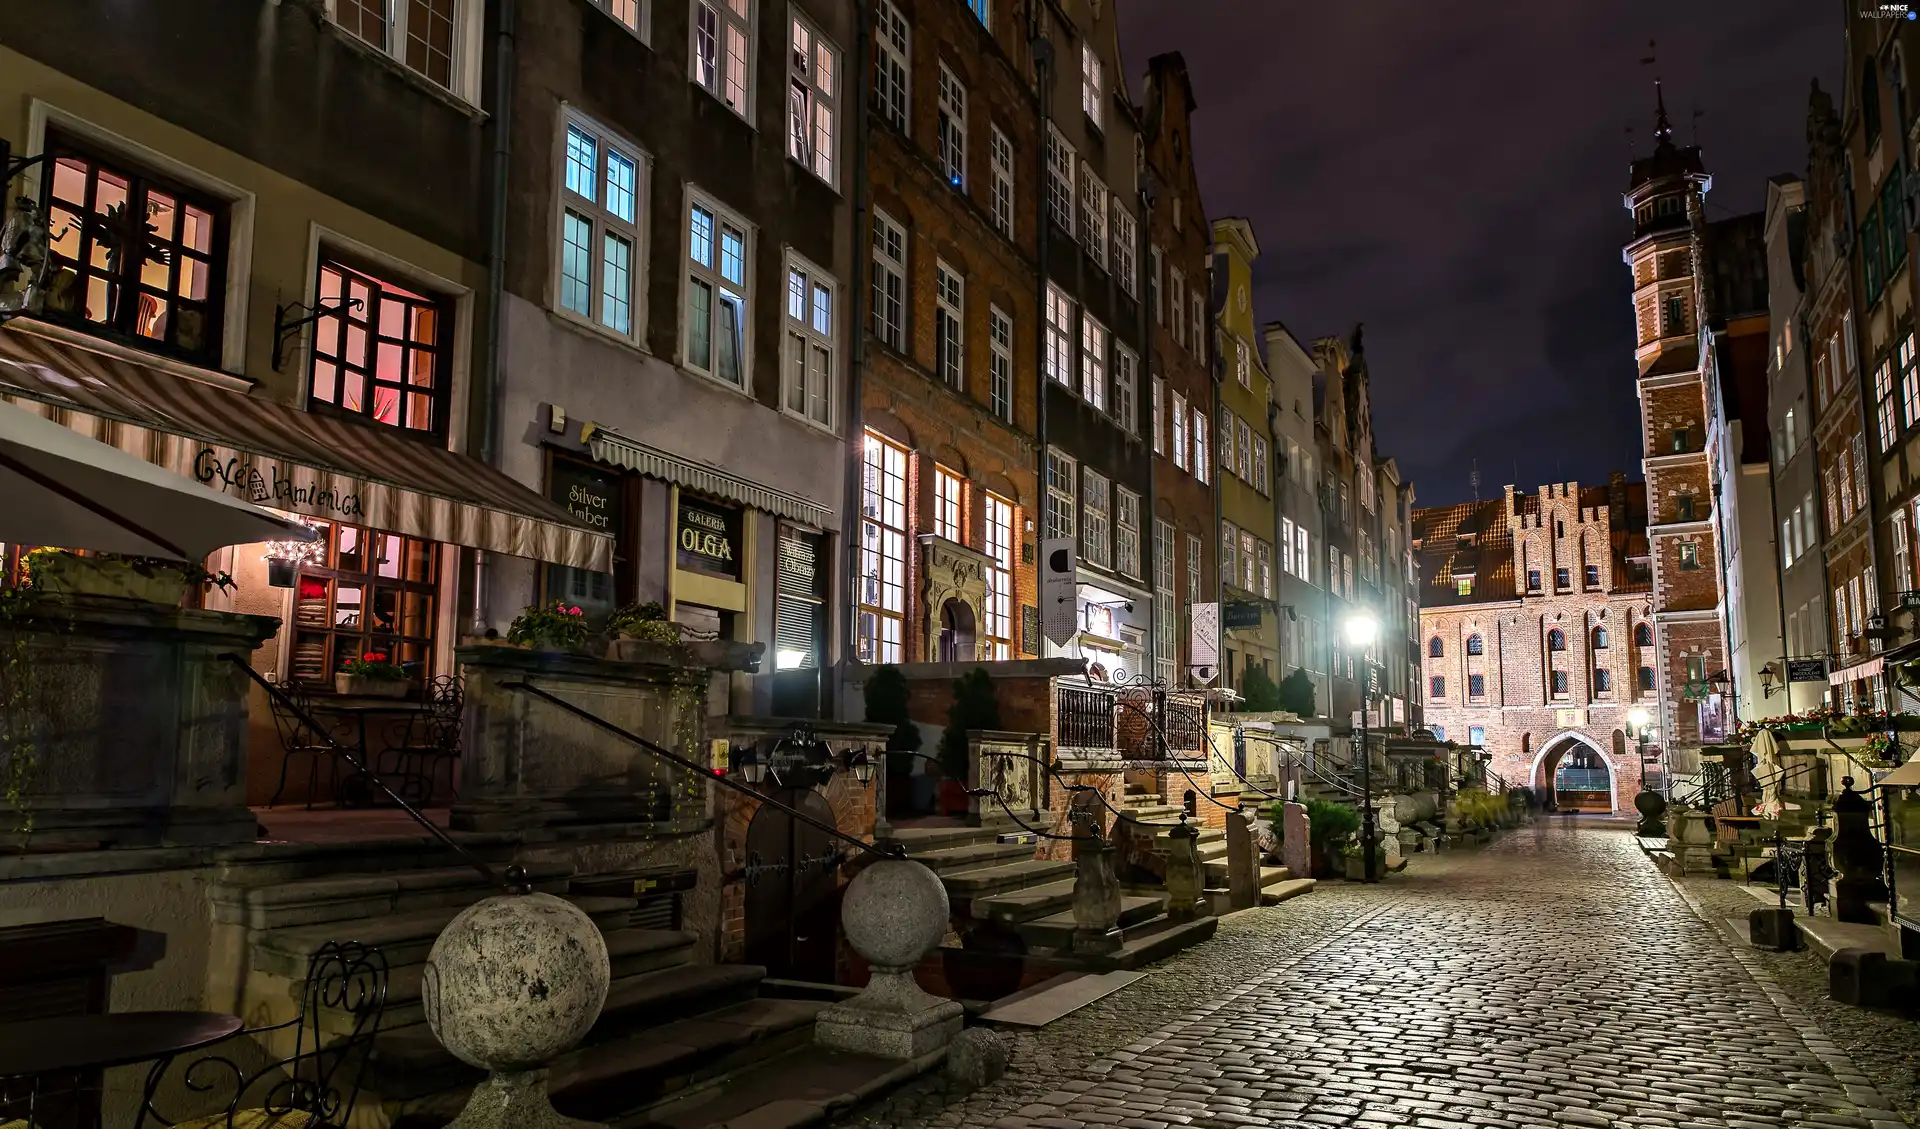 City at Night, Poland, Gdańsk